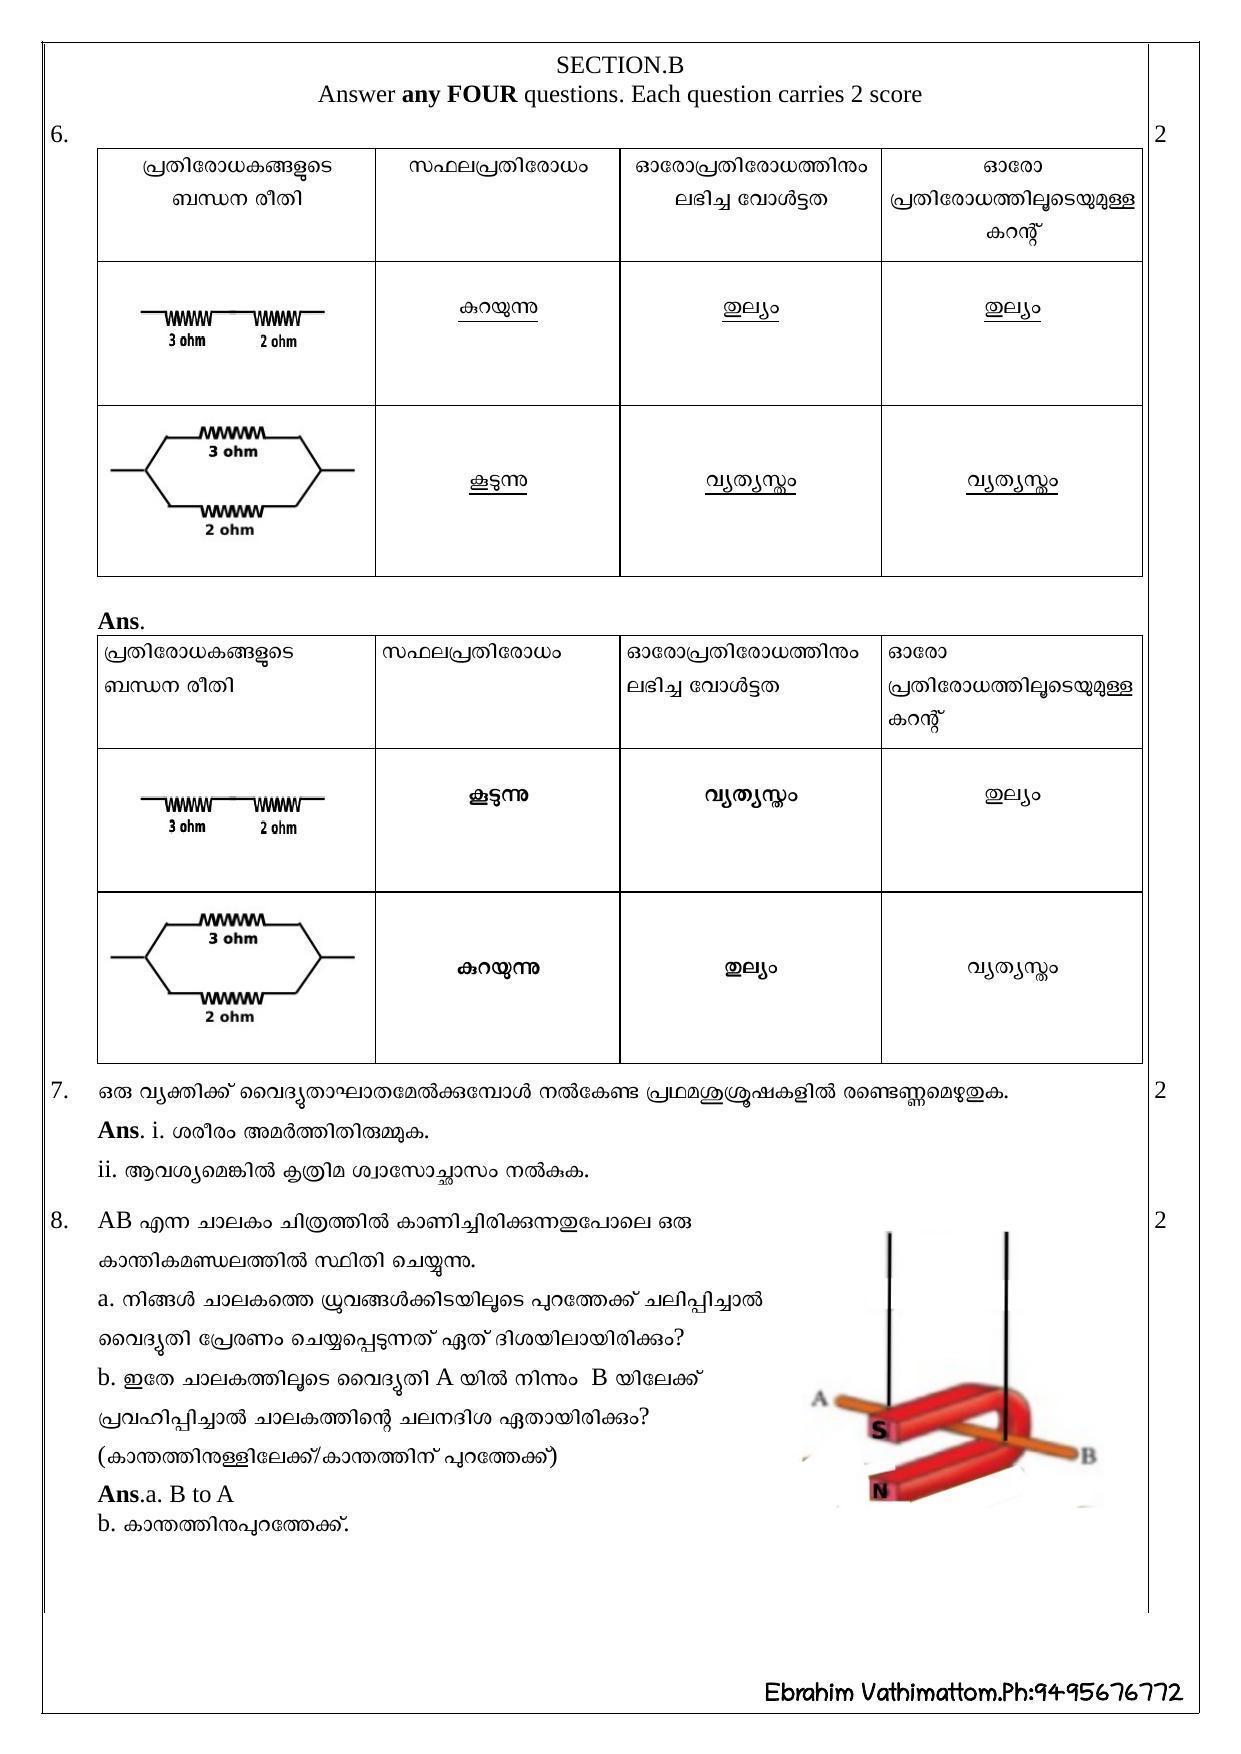 Kerala SSLC 2020 Physics Answer Key - Page 2